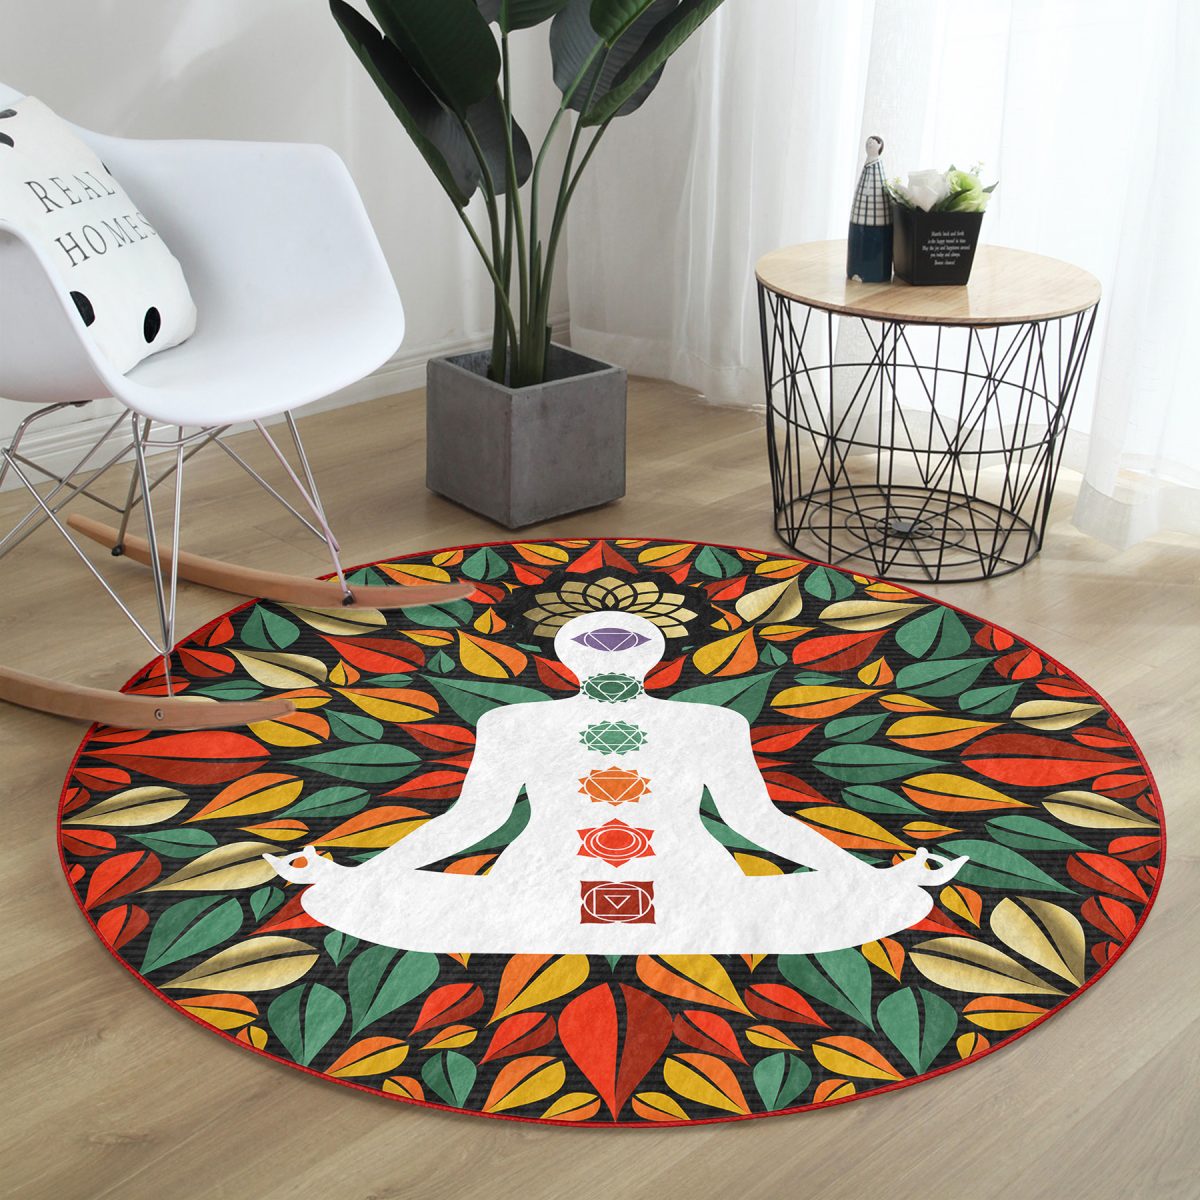 Uzak Doğu Yoga Motifleri Mandala Özel Tasarım Dijital Baskılı Renkli Salon ve Oturma Odası Yıkanabilir Kaymaz Tabanlı Yuvarlak Halı Realhomes